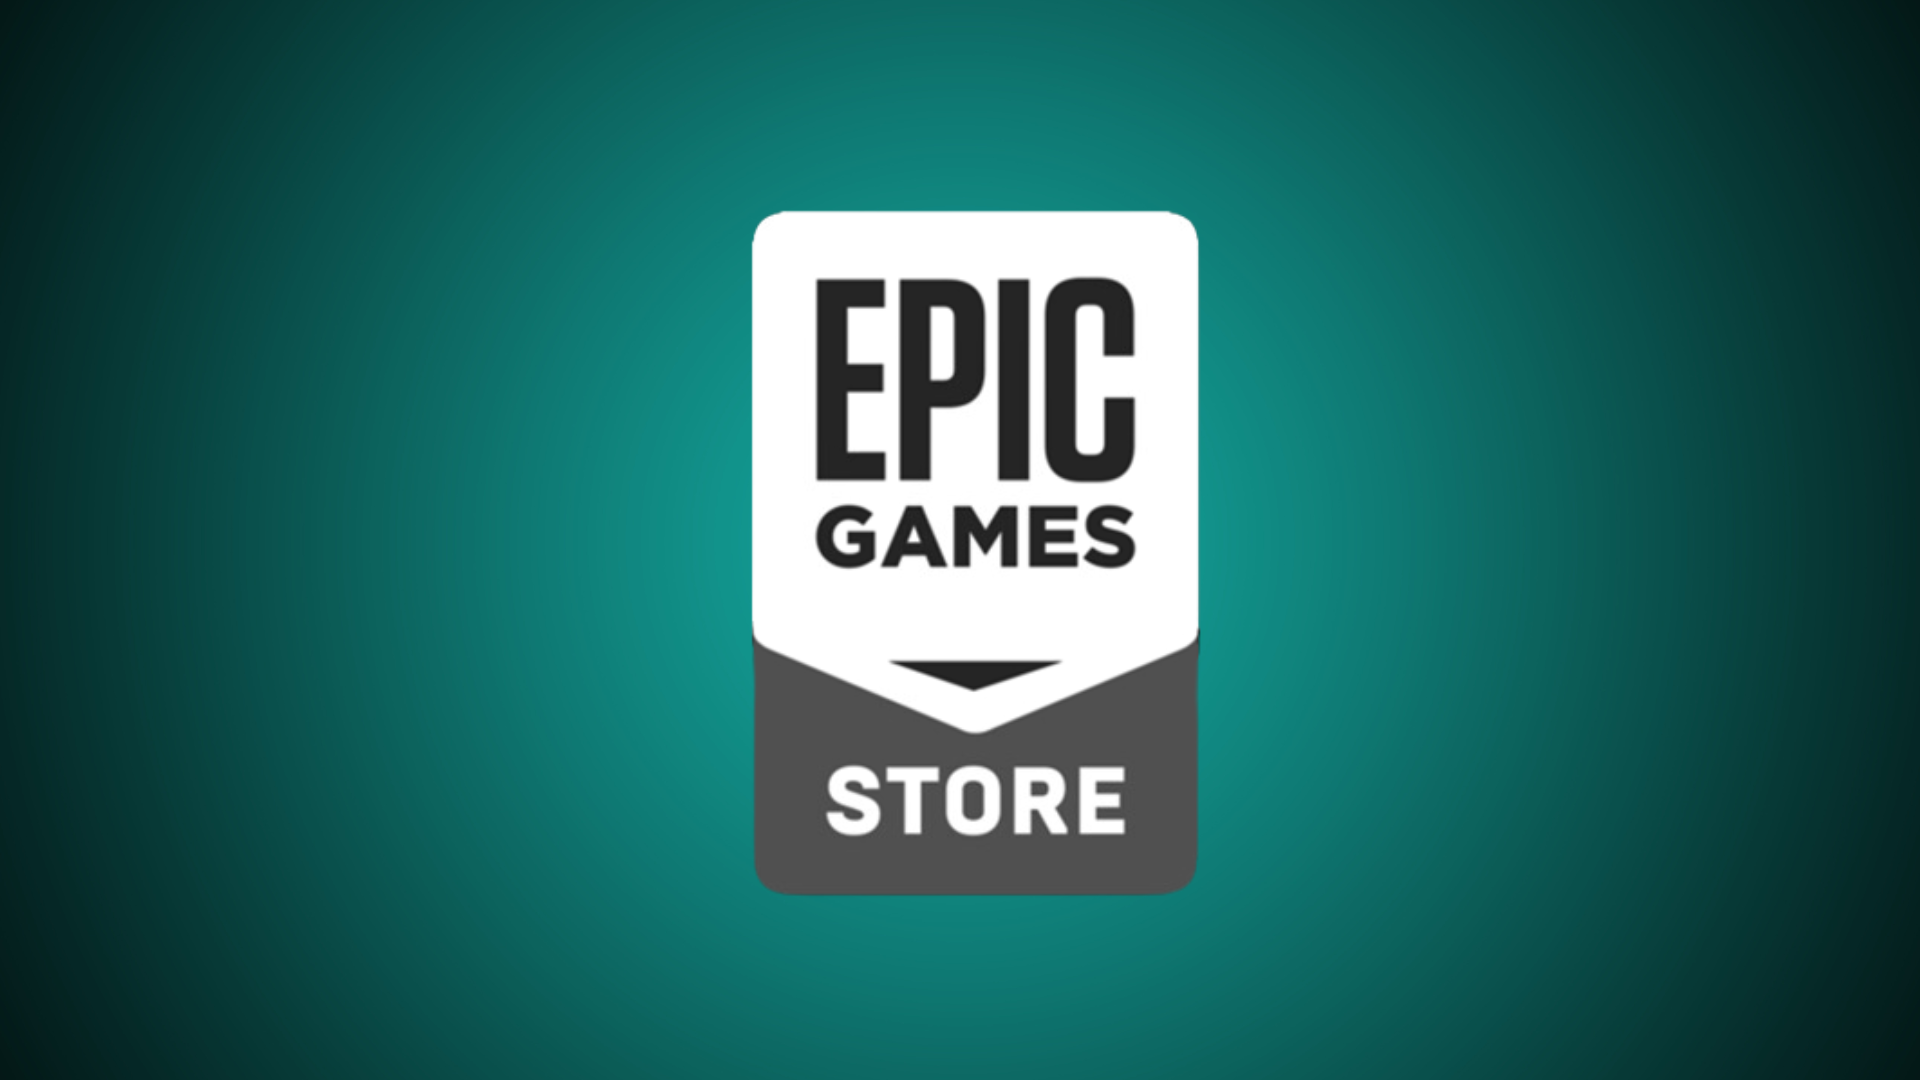 Epic Games Store oferece jogos gratuitos todas as semanas